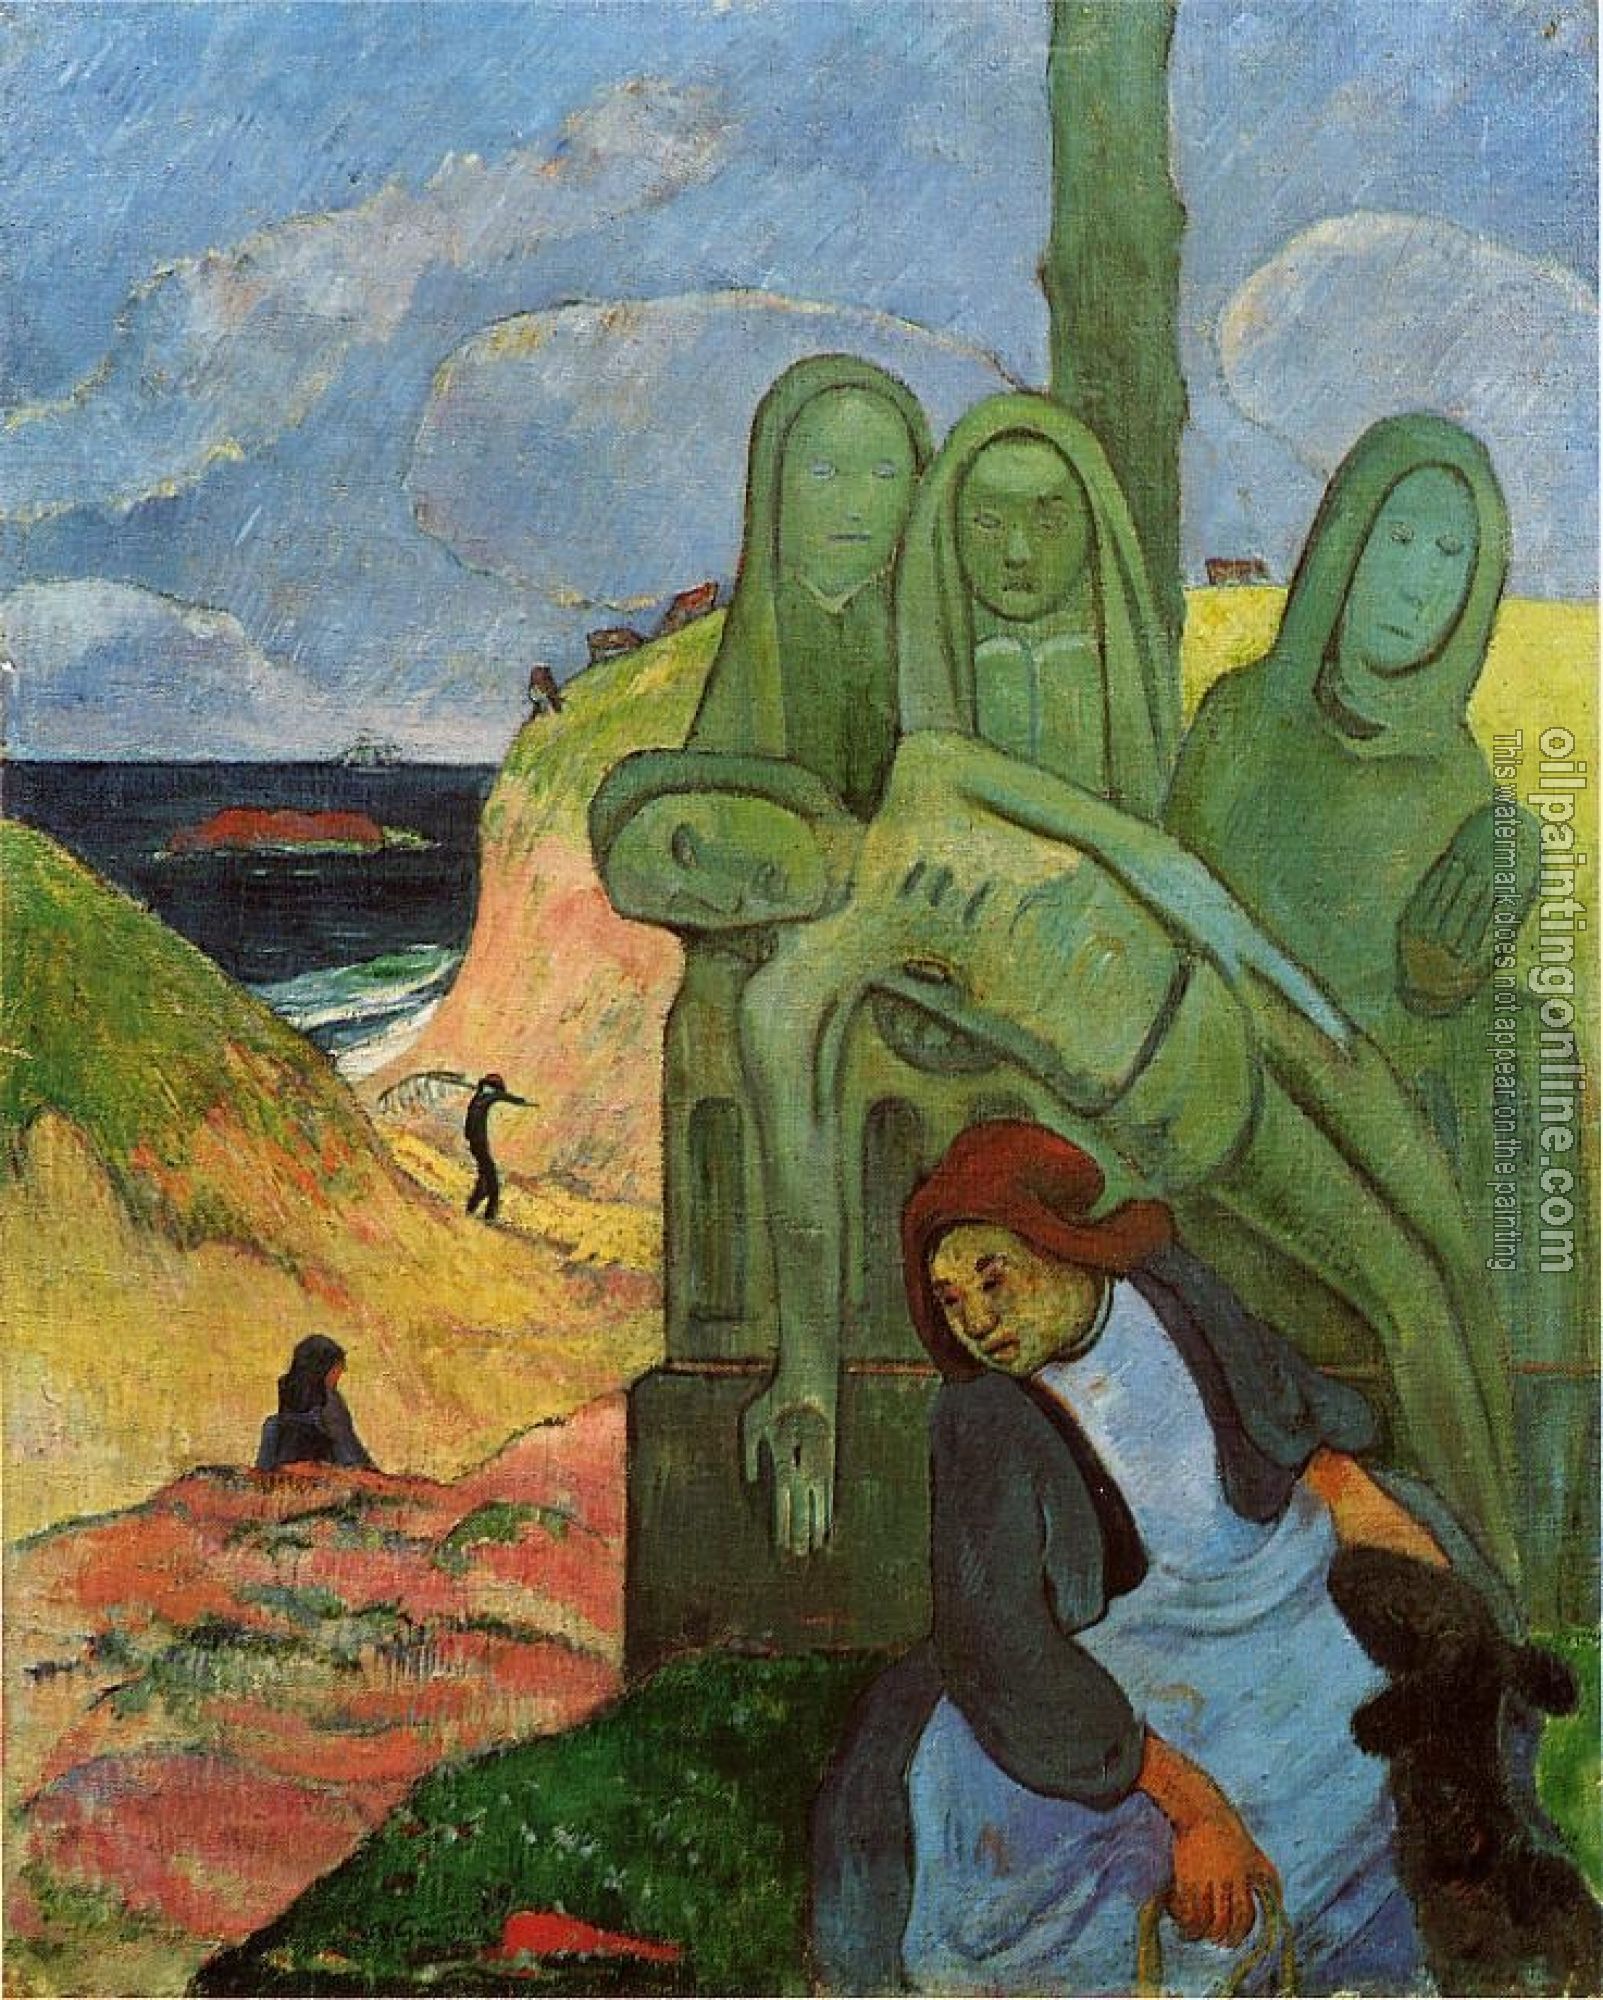 Gauguin, Paul - Green Christ